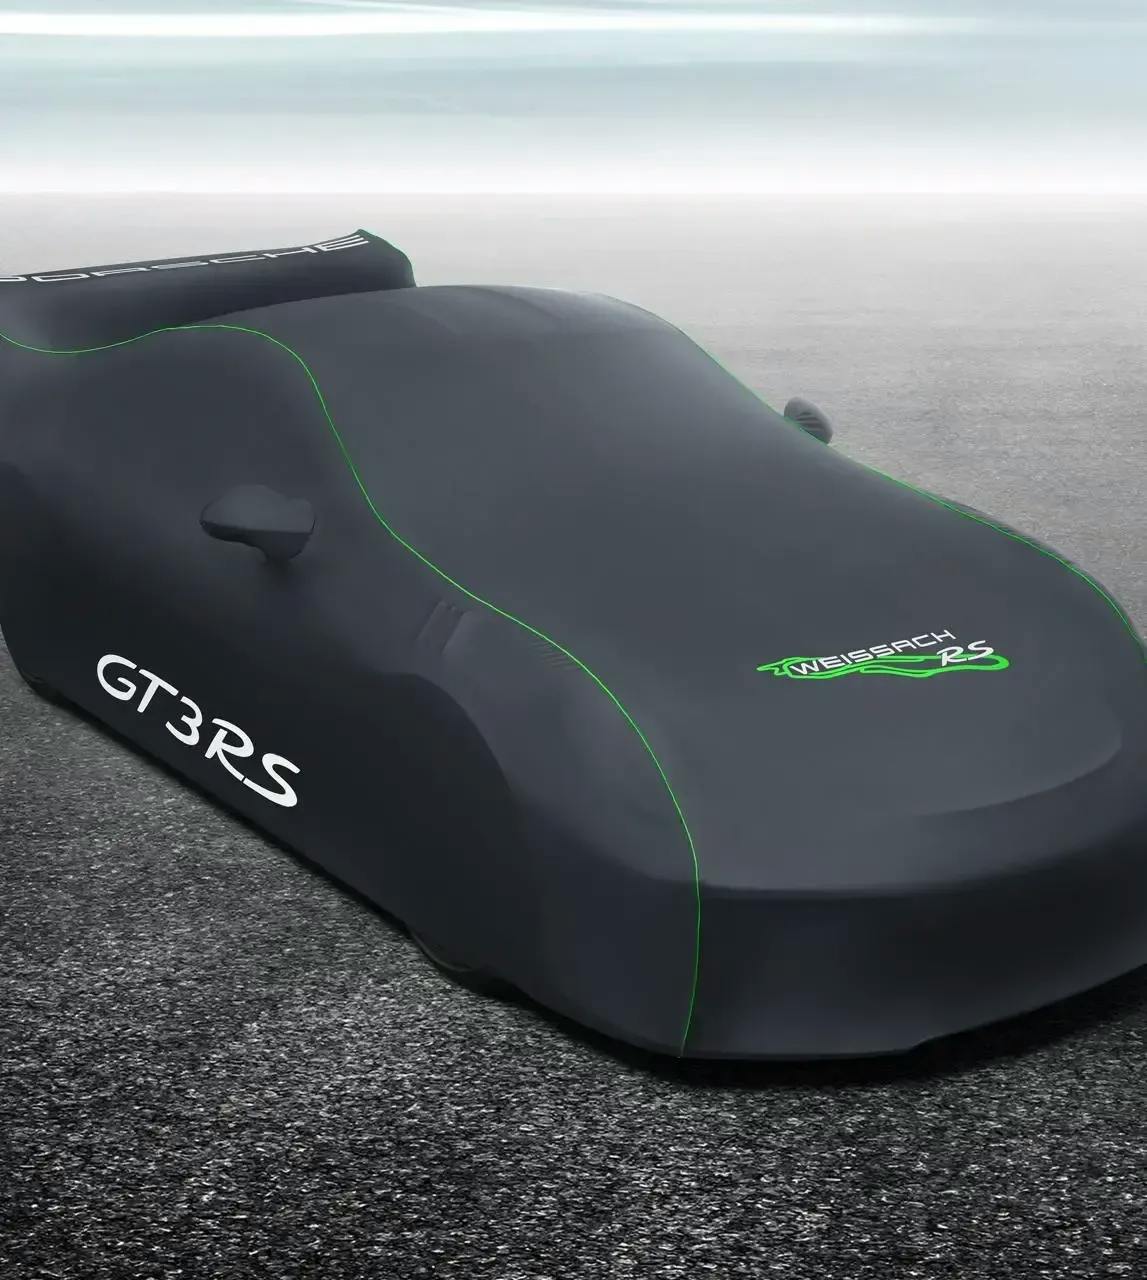 Abdeckplane / mobile Garage für Porsche 911 GT3 RS günstig bestellen